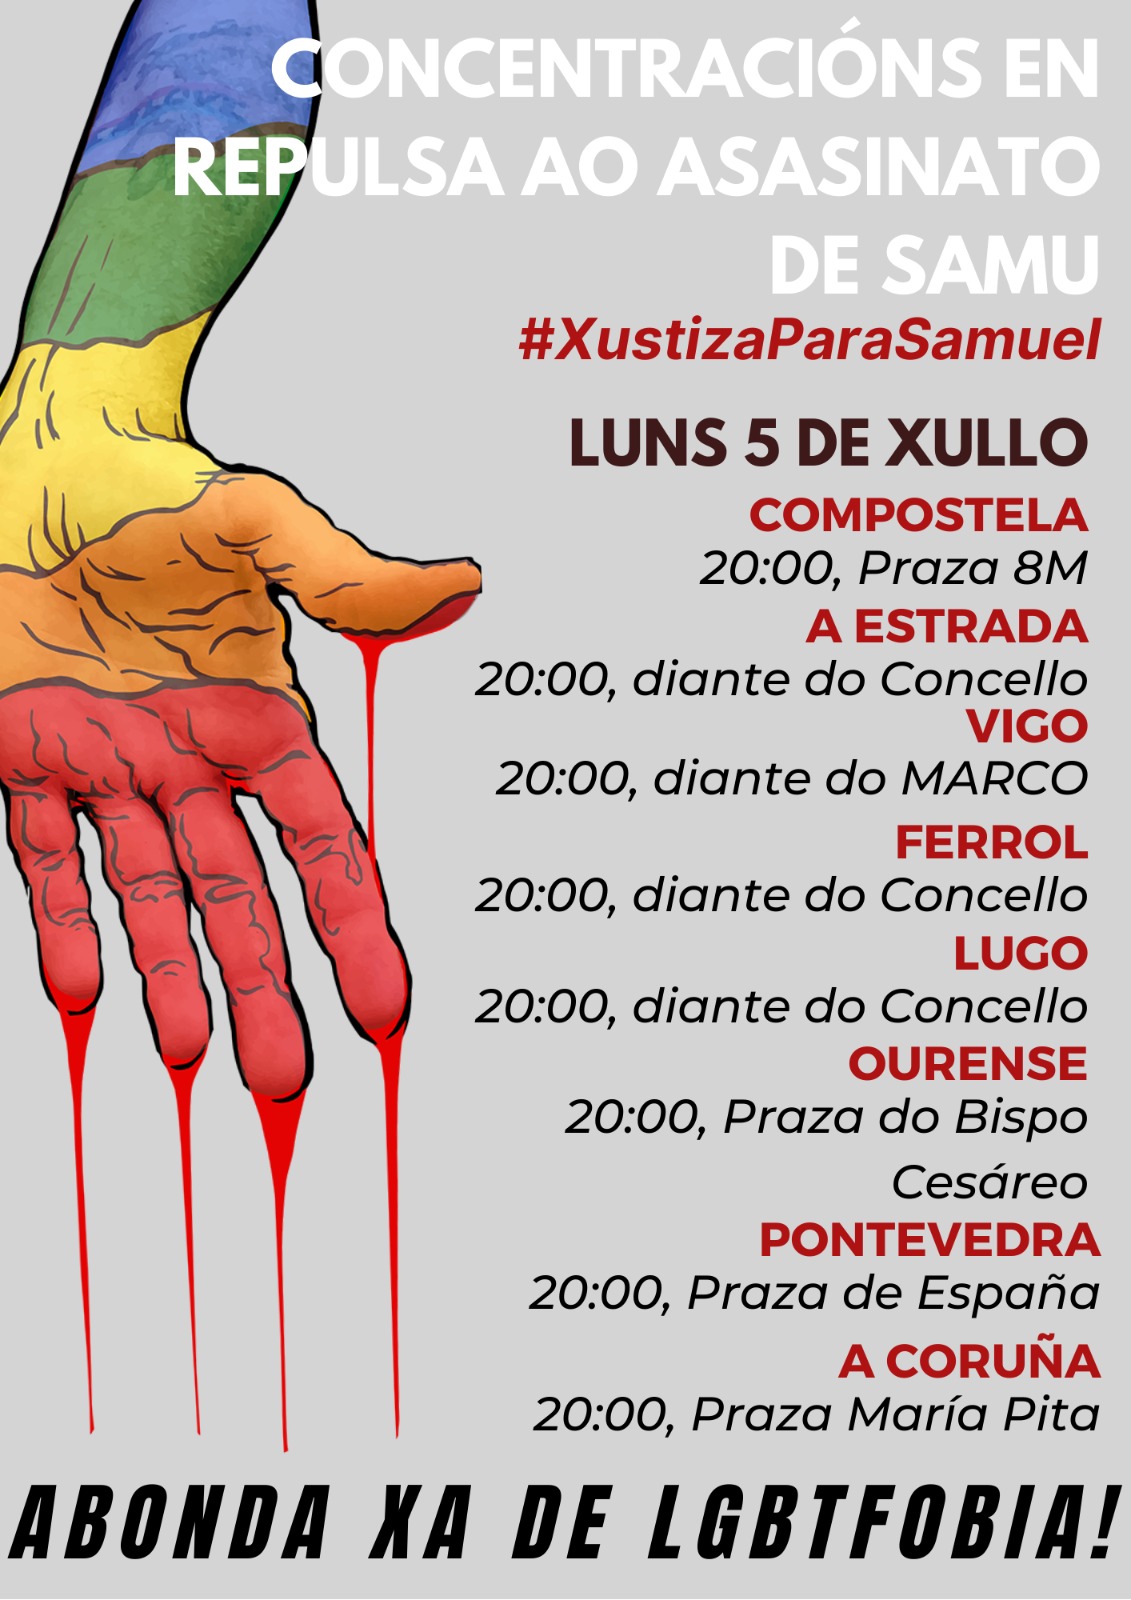 Convocatorias de manifestanciones en varias ciudades, bajo el lema #JusticiaParaSamuel